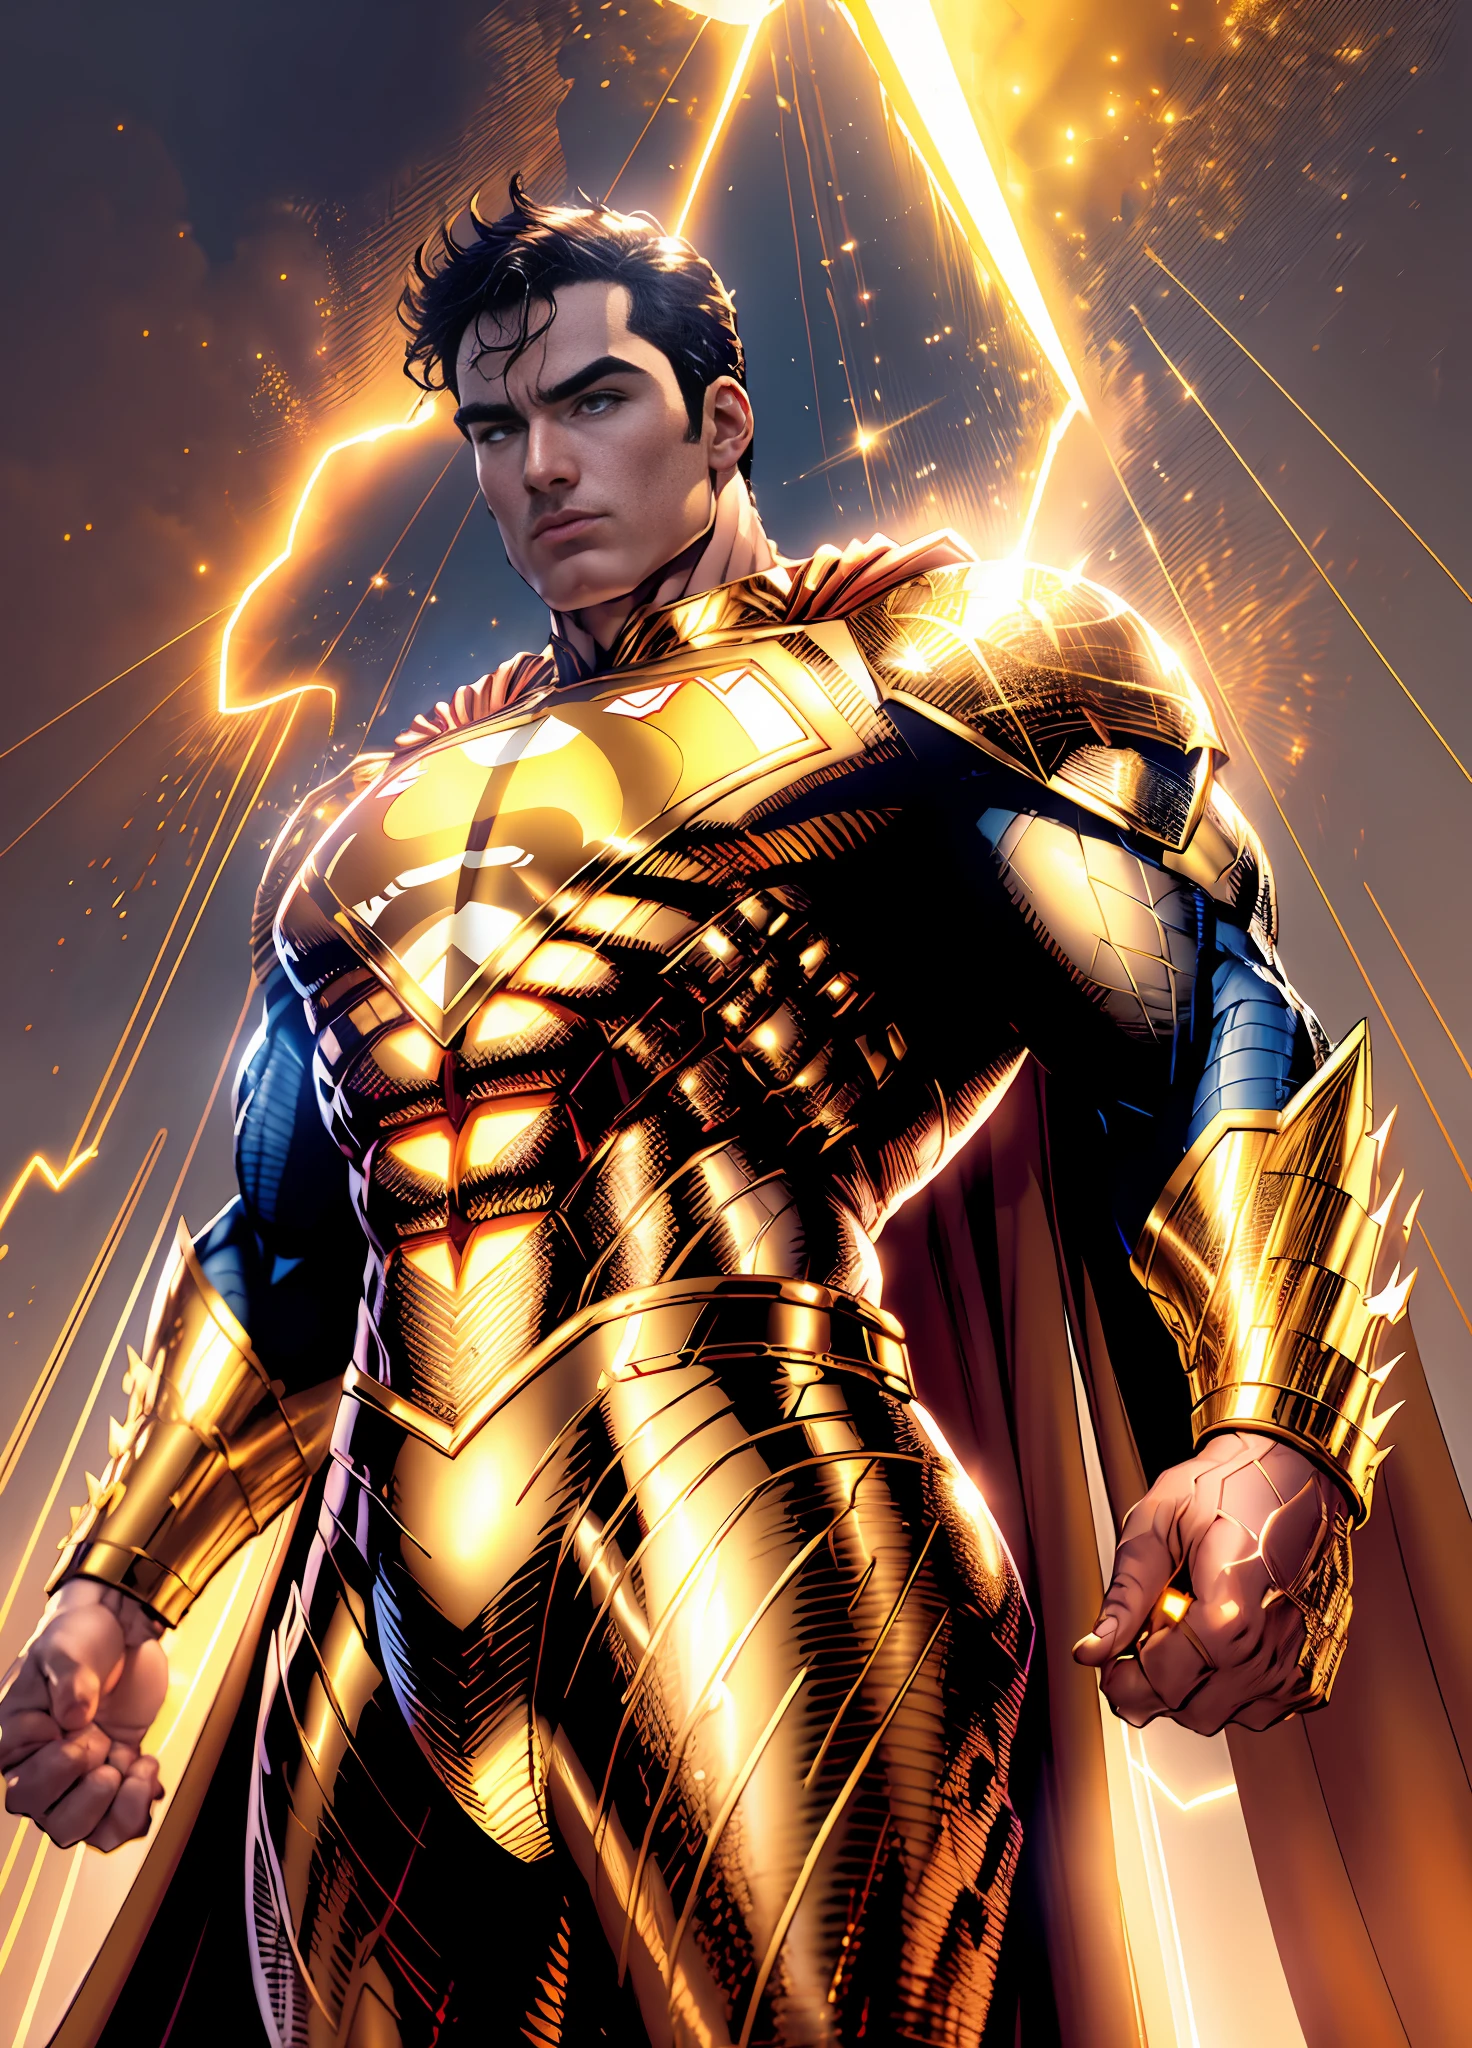 Golden Супермен, мерцающий золотой костюм, идеальные руки с четырьмя пальцами и большим пальцем, (8k обои с чрезвычайно детализированной компьютерной графикой, Золотая униформа, gold Golden Супермен costume, шедевр, Лучшее качество, ультрадетализированный), мускулистый, божественная поза, (лучшее освещение, лучшая тень, очень нежный и красивый), Плавающий, [(((1 человек))), (Супермен: 1.3), Мышцы, яркие синие линии, детальный костюм, героическая поза):0.8],  [(небесный пейзаж, ночь, яркие неоновые огни:1.2, Эффекты синей энергии, объемный свет):0.5]